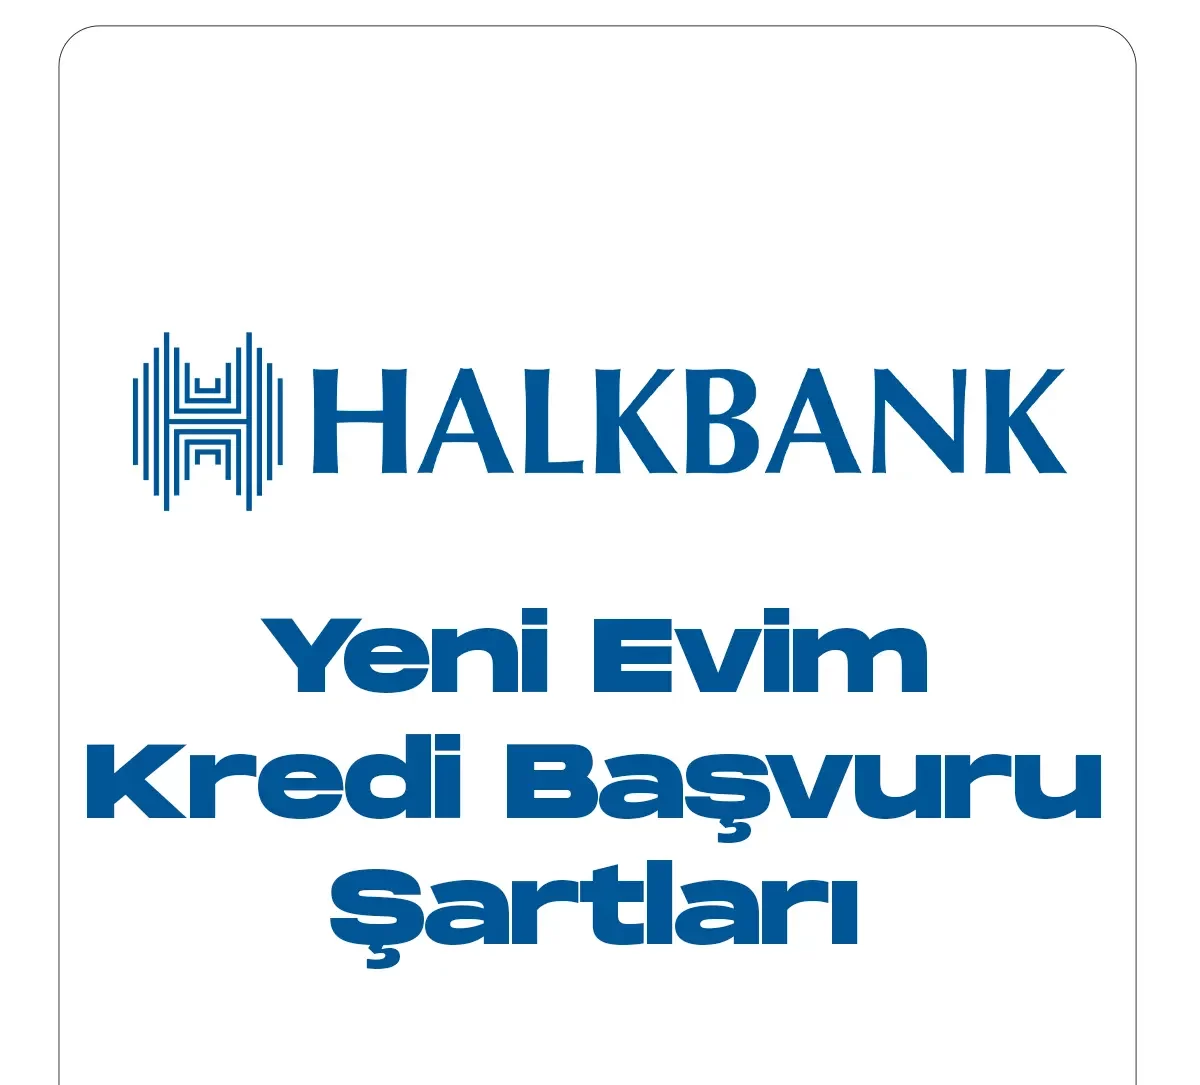 Halkbank yeni evim kredi kampanyası.